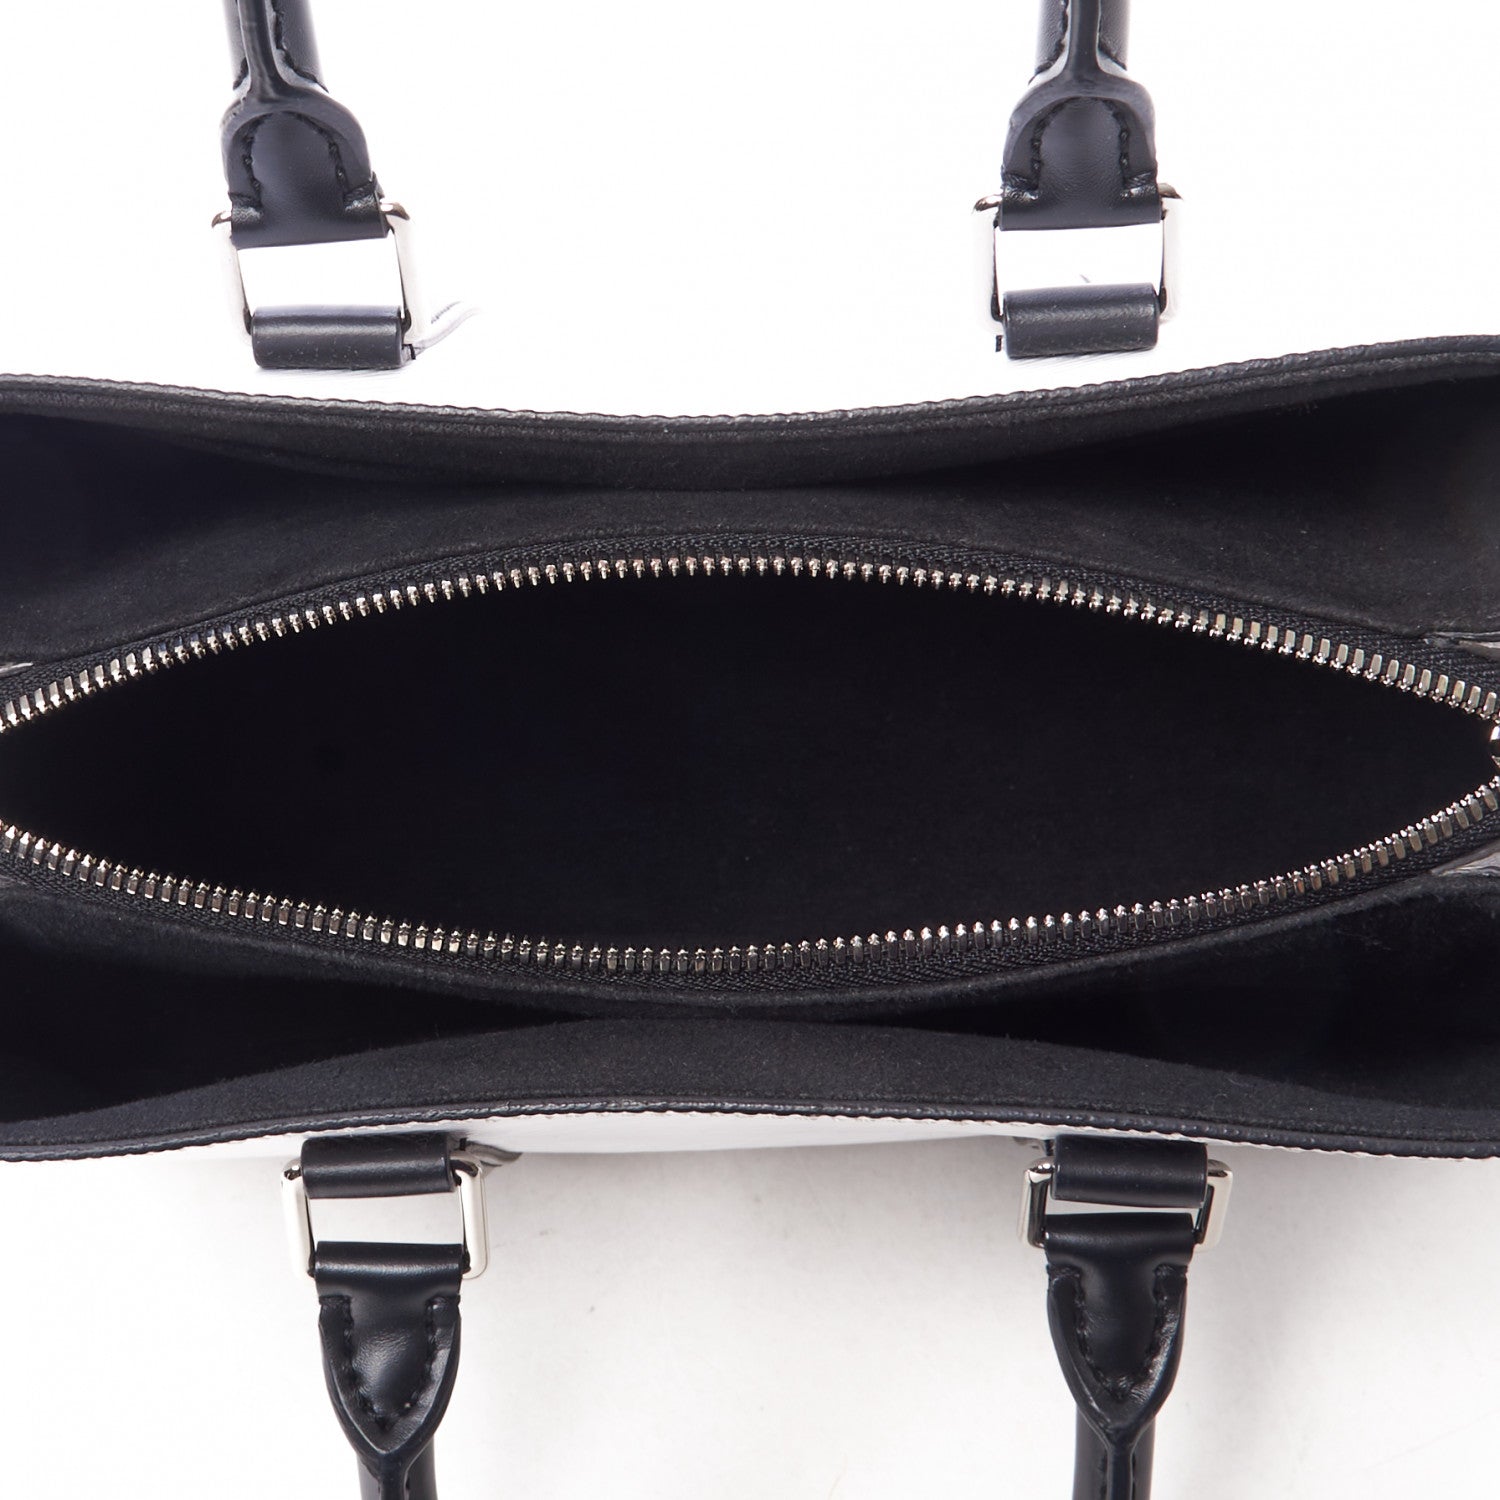 Authentic Louis Vuitton Black Epi Leather Soufflot BB Bag – Paris